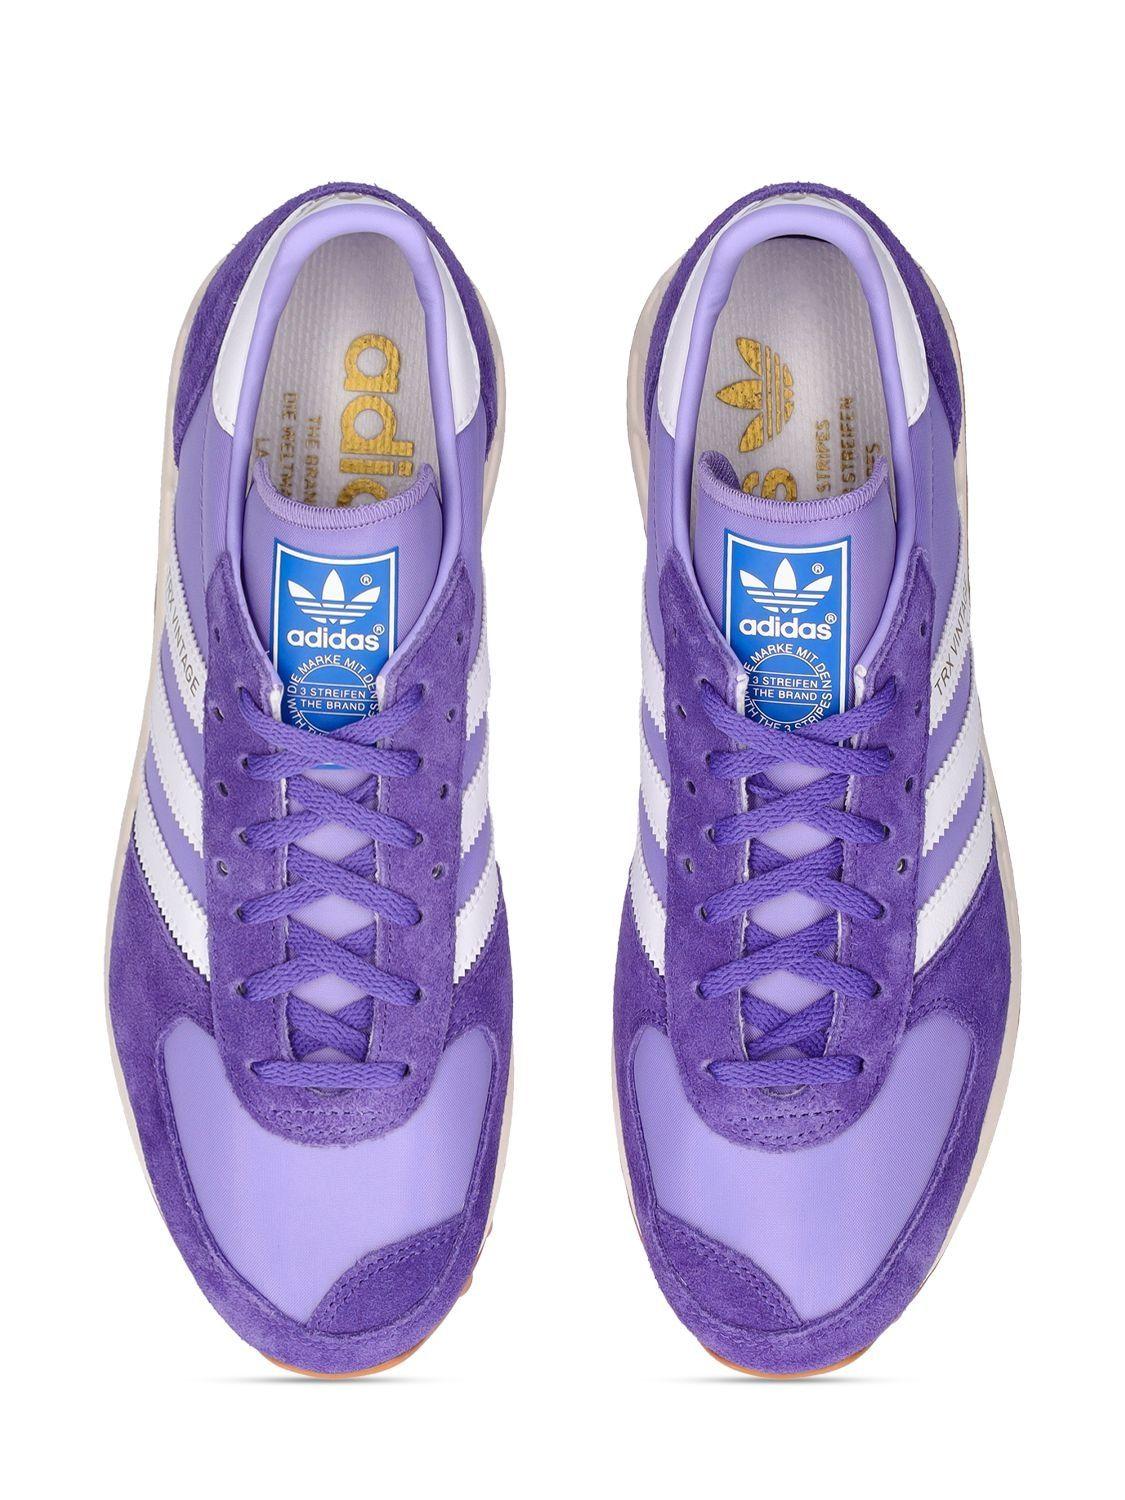 adidas Originals Trx Vintage Sneakers in Purple | Lyst